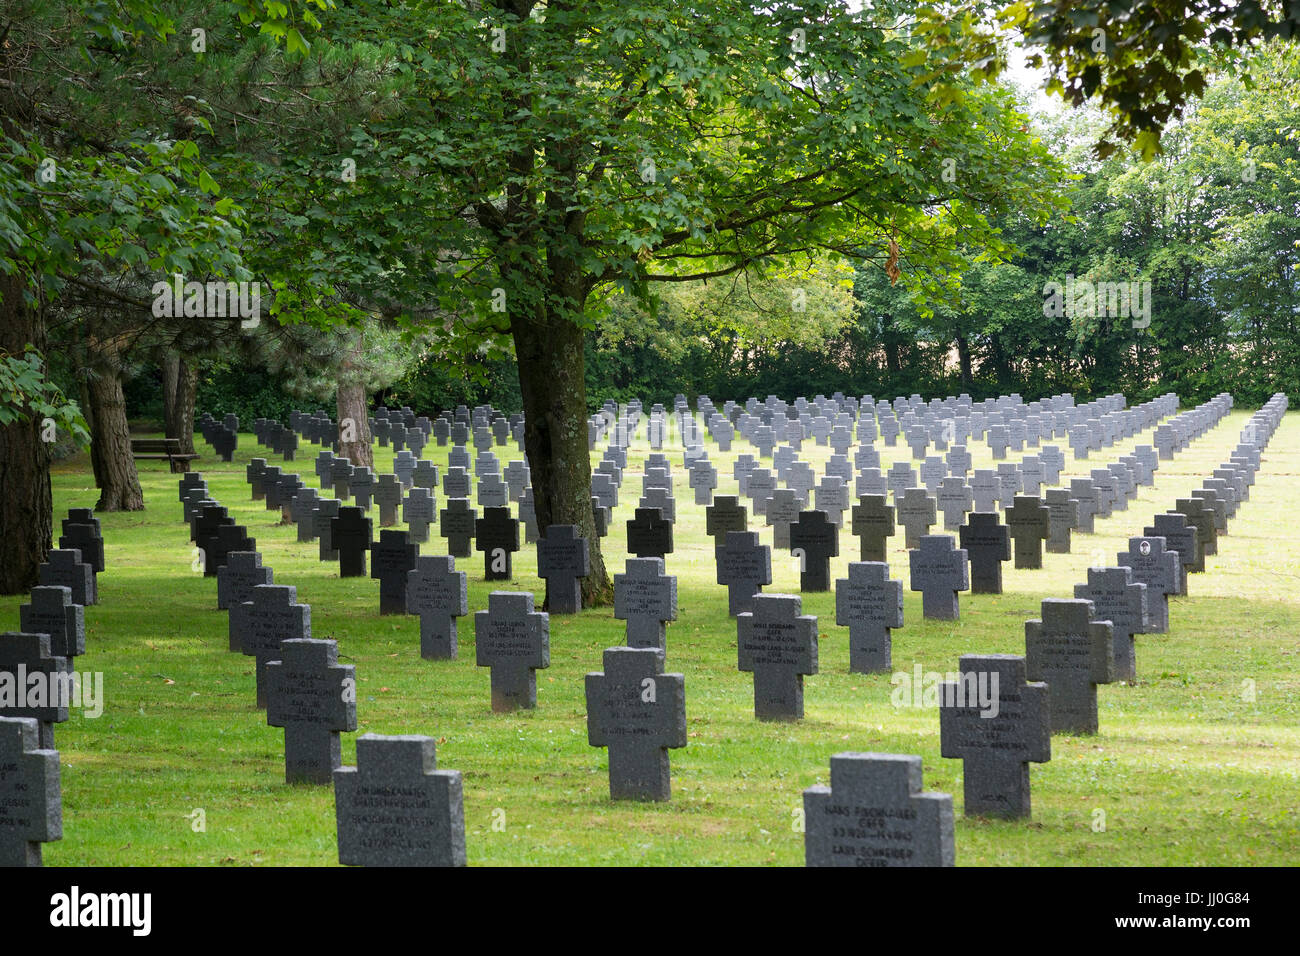 Soldier's cemetery of Allentsteig, forest quarter, Lower Austria, Austria - three-day event cemetery in Allentsteig, forest quarter region, Lower Aust Stock Photo